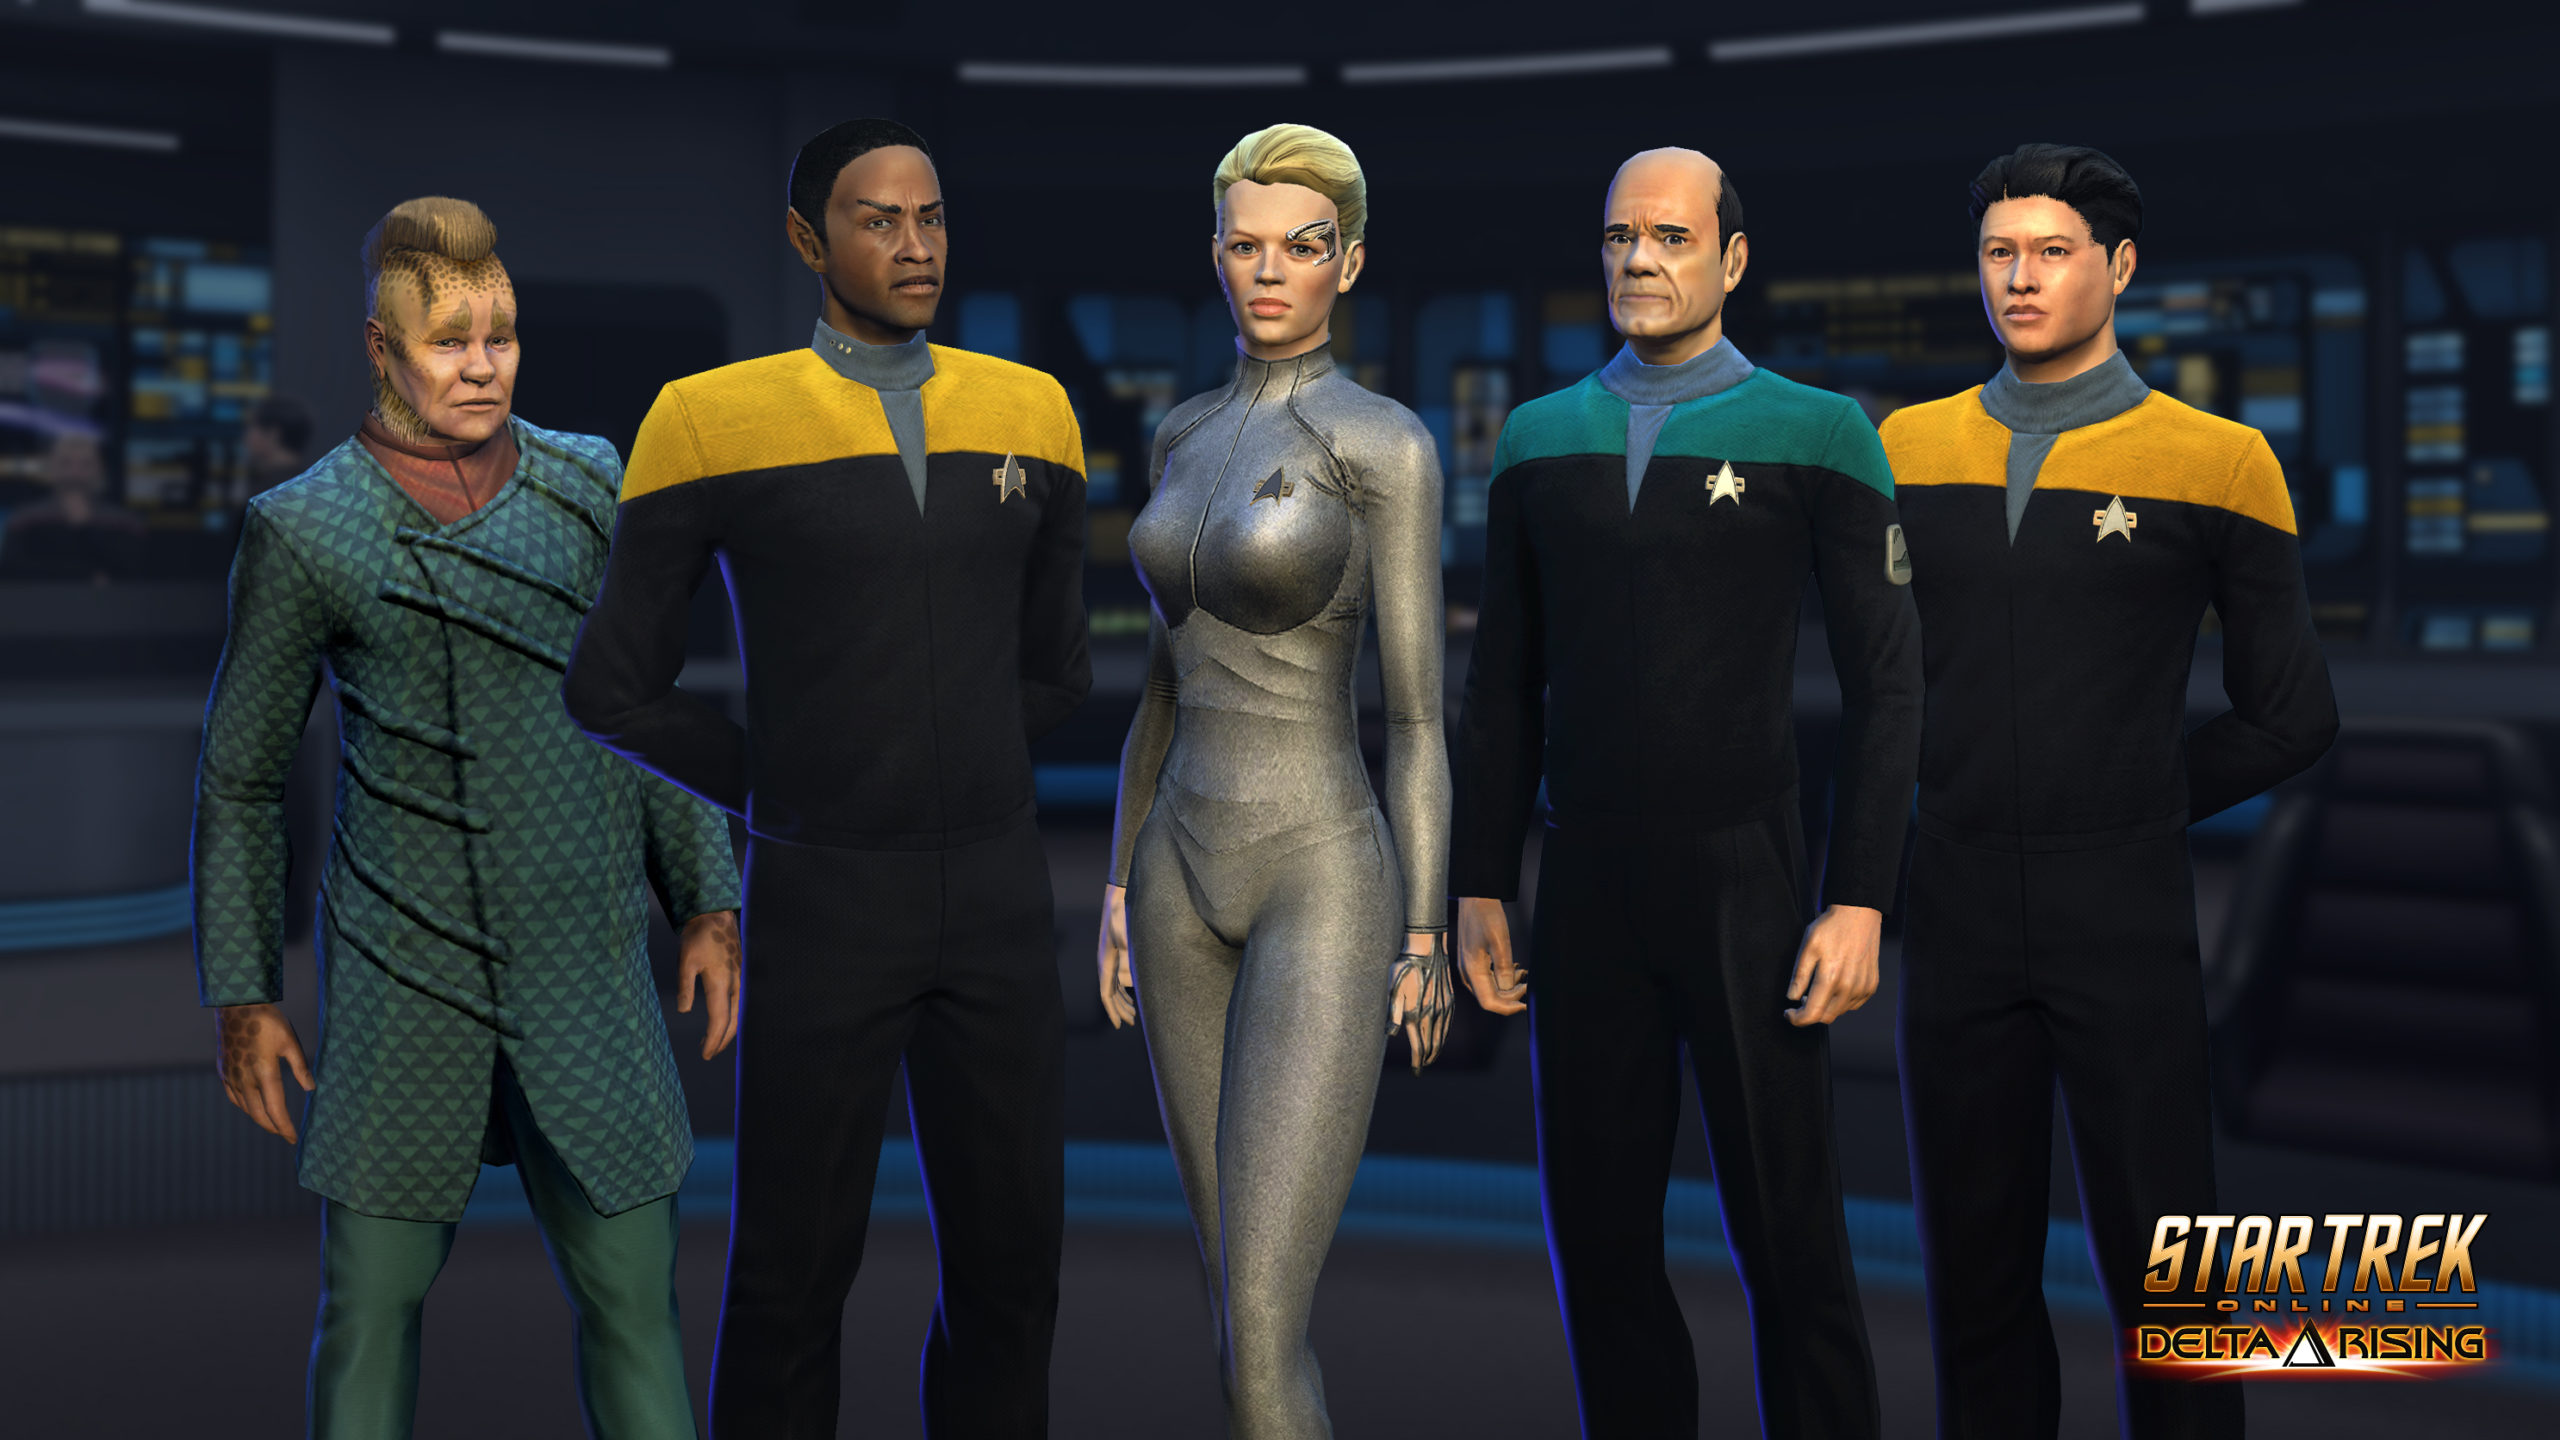 Star Trek Online Gets The Voyager Crew Back Together